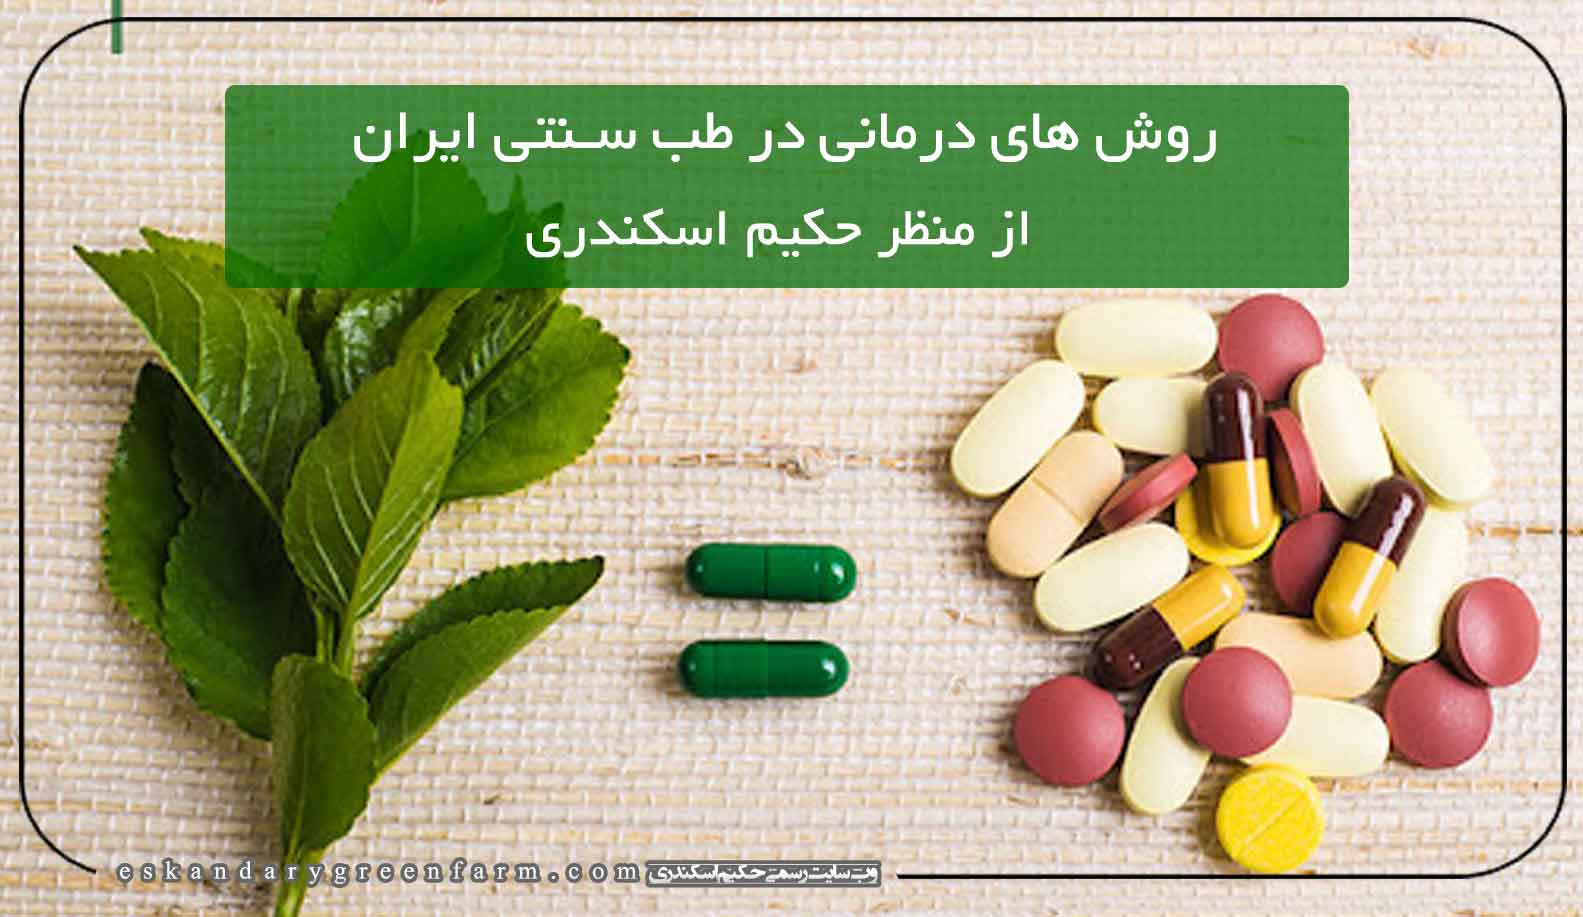 روش های درمانی در طب سنتی ایران